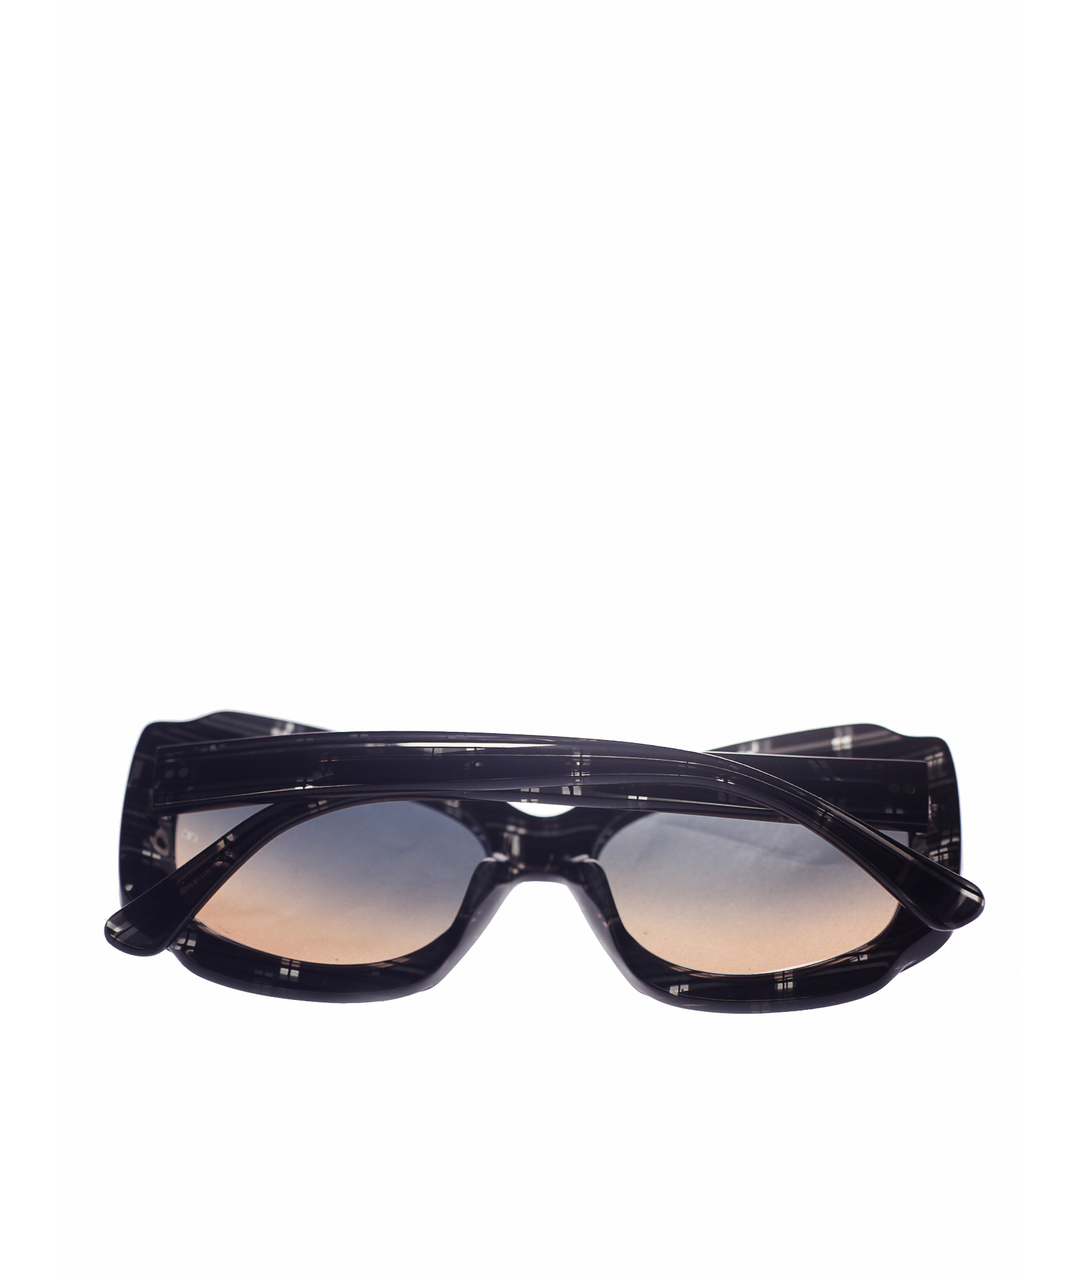 OLIVER GOLDSMITH Пластиковые солнцезащитные очки, фото 2